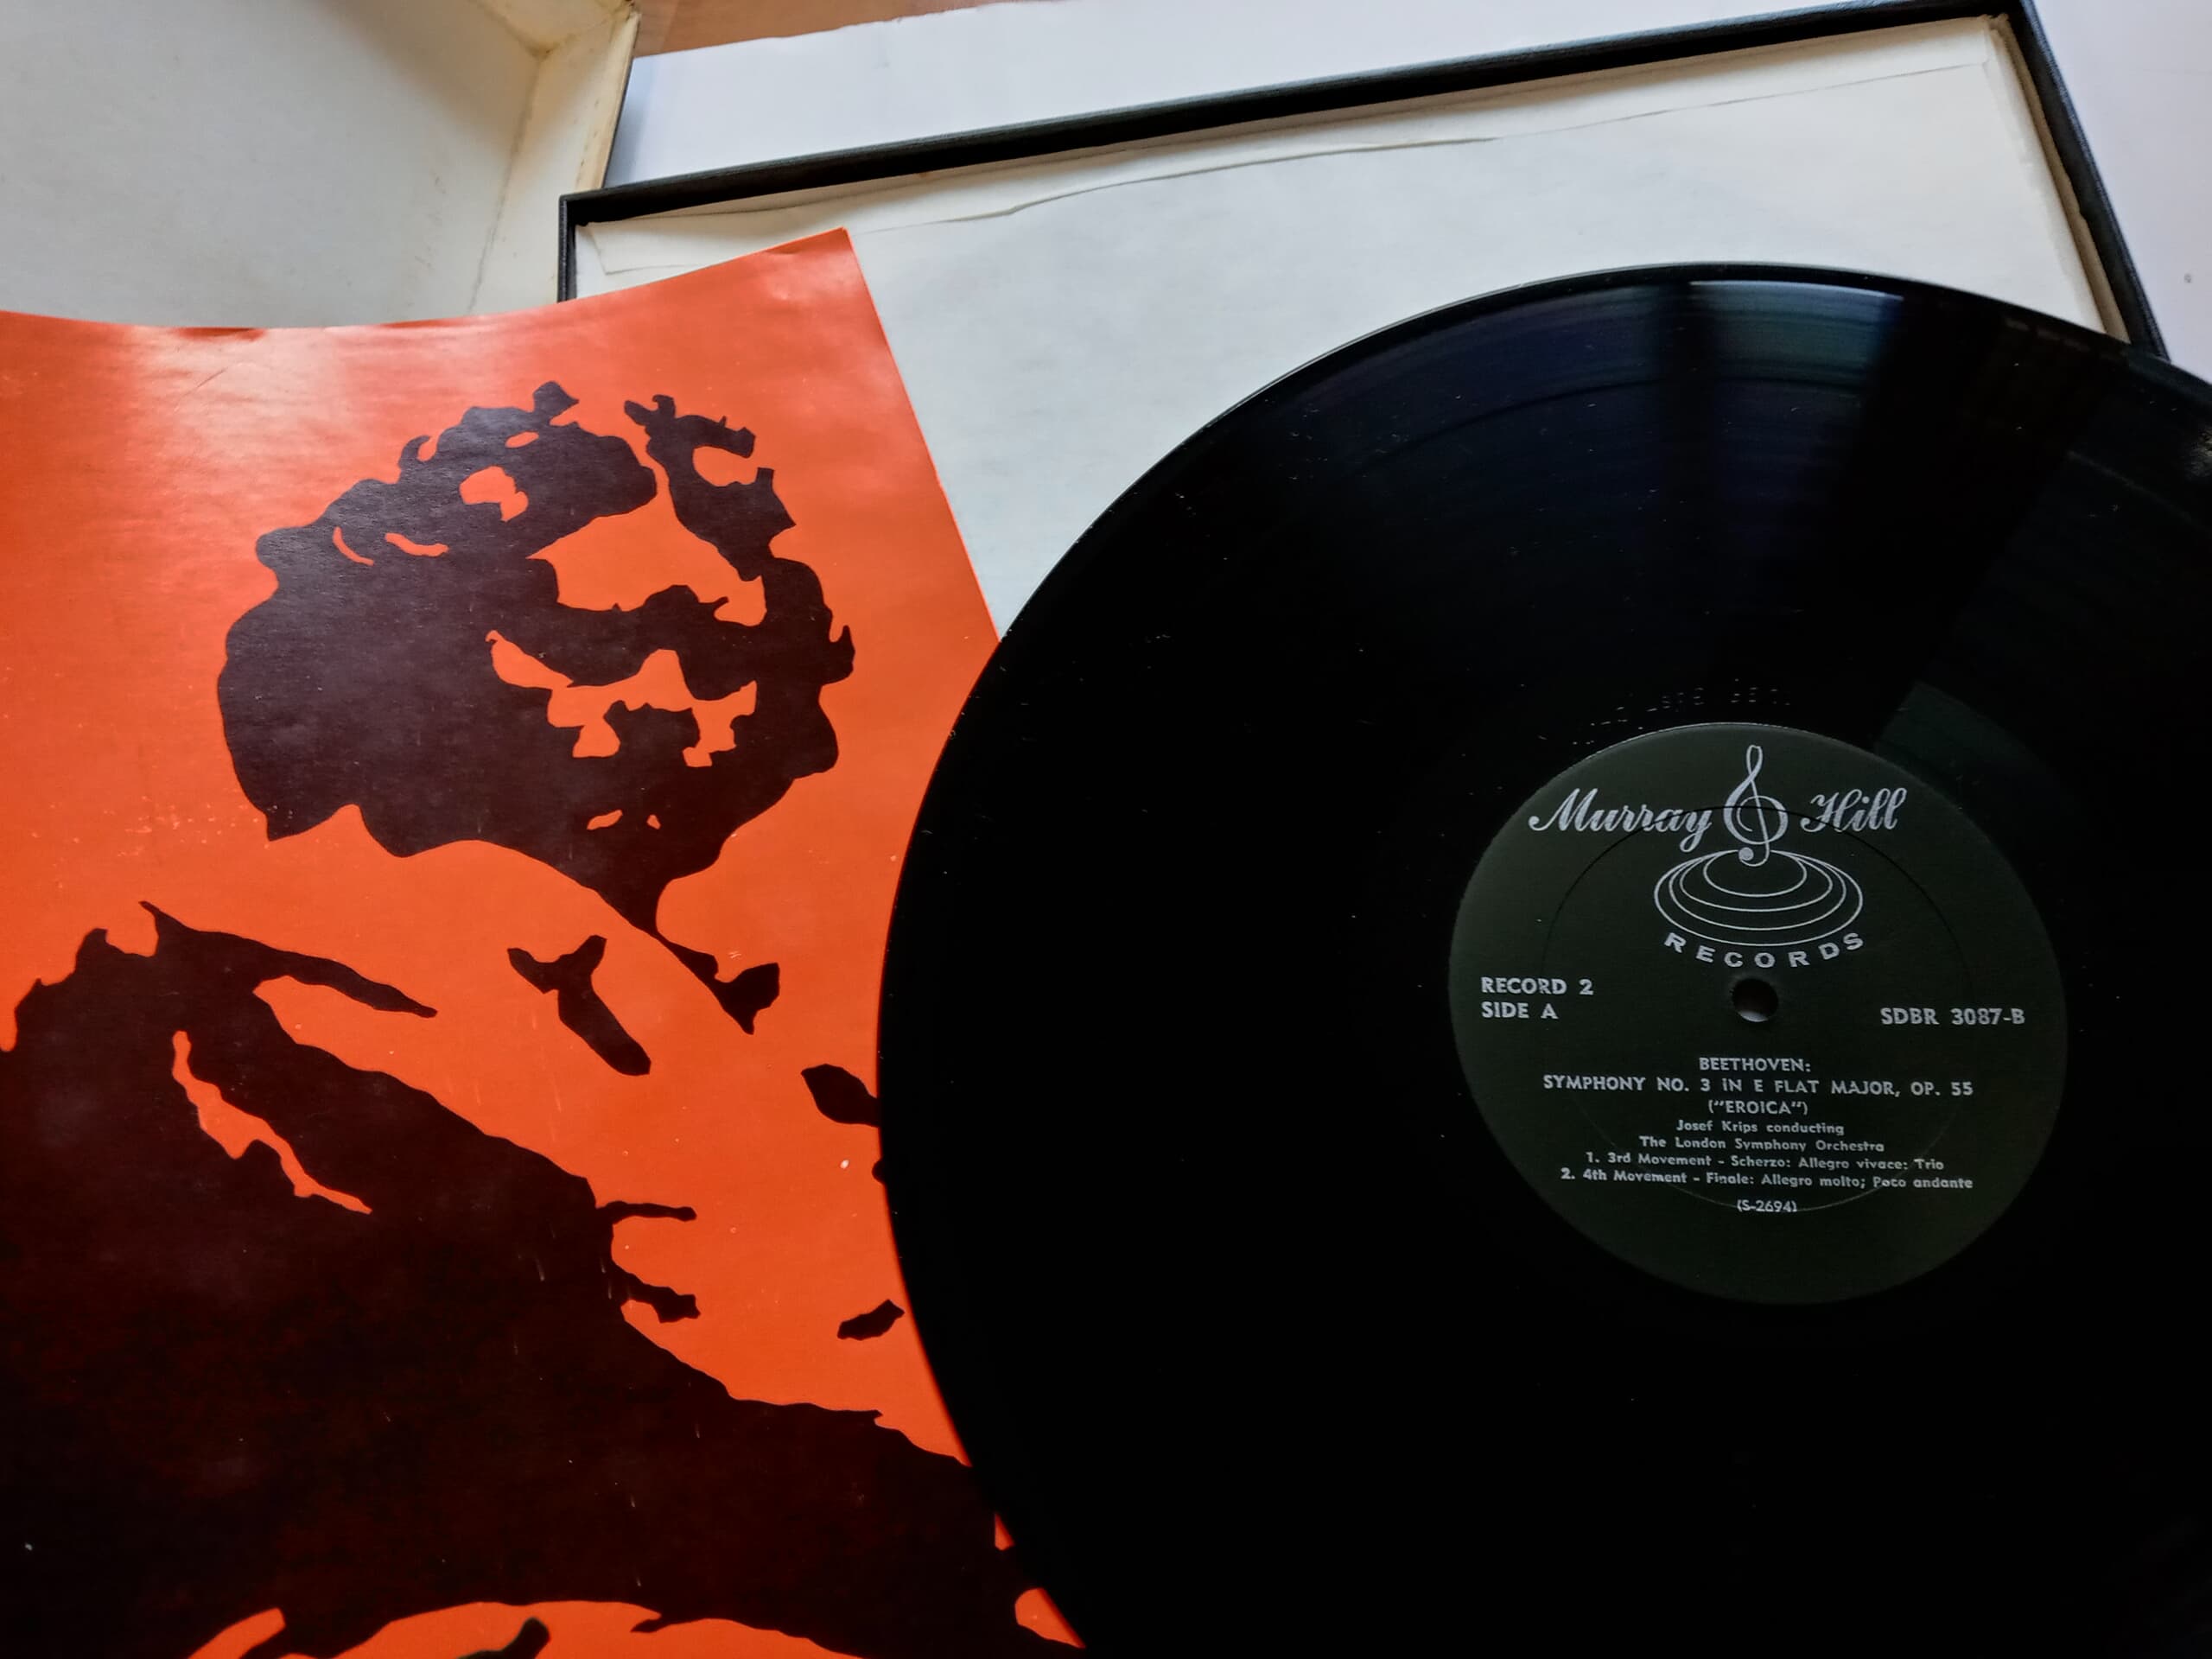 LP(수입) 베토벤: 교향곡 전집 - 요제프 크립스/런던 심포니(Box 7LP)